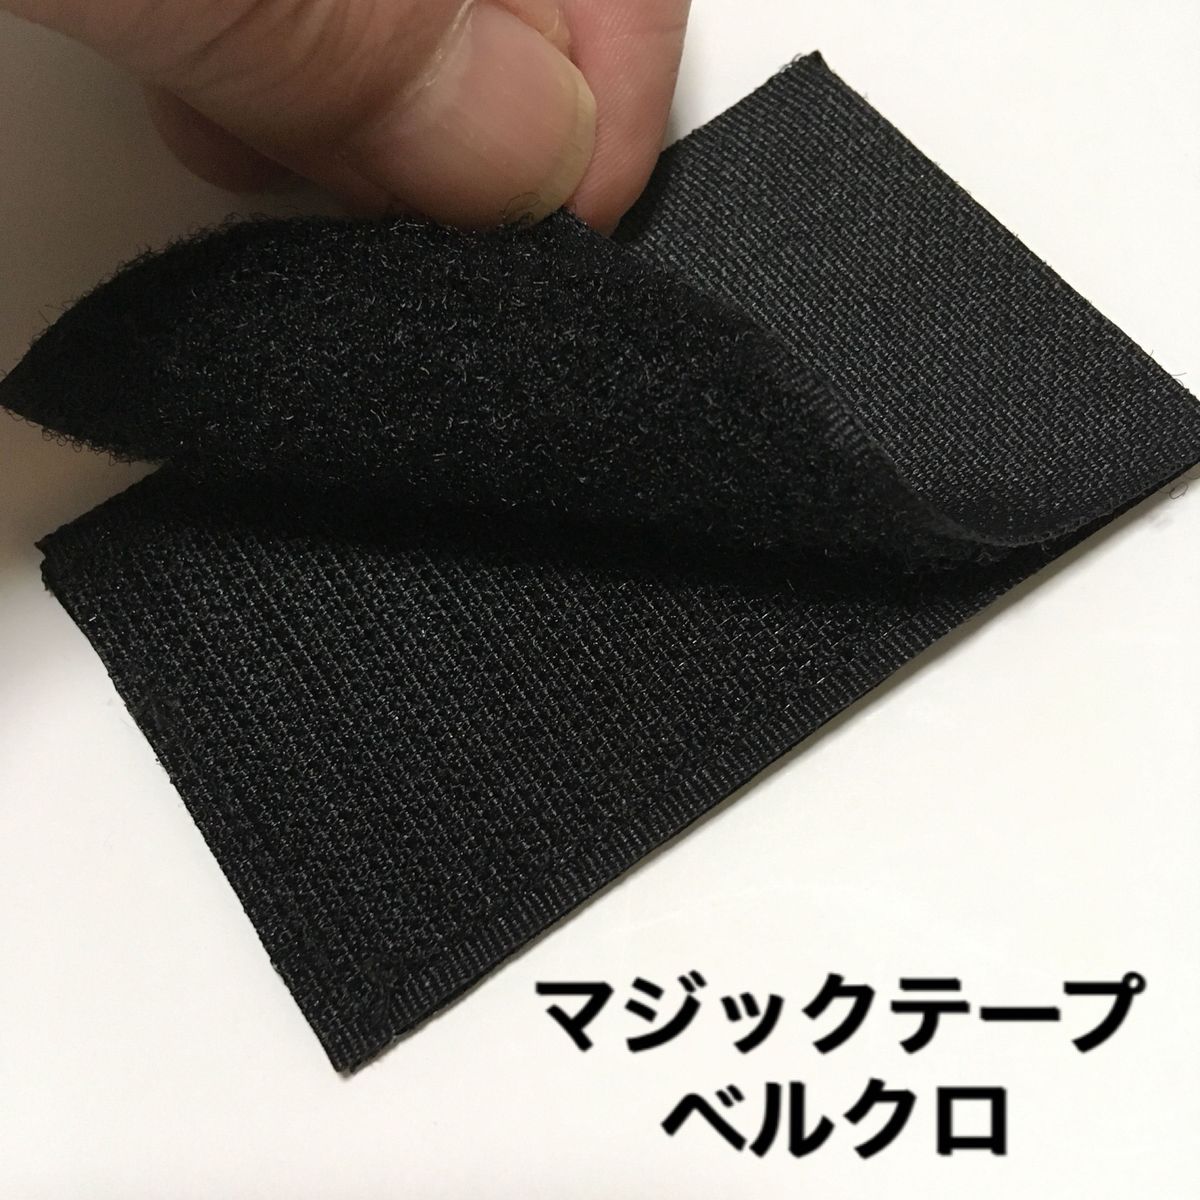 日本 日の丸 JPN 国旗 ミリタリー 刺繍 パッチ ワッペン サバゲー リメイク